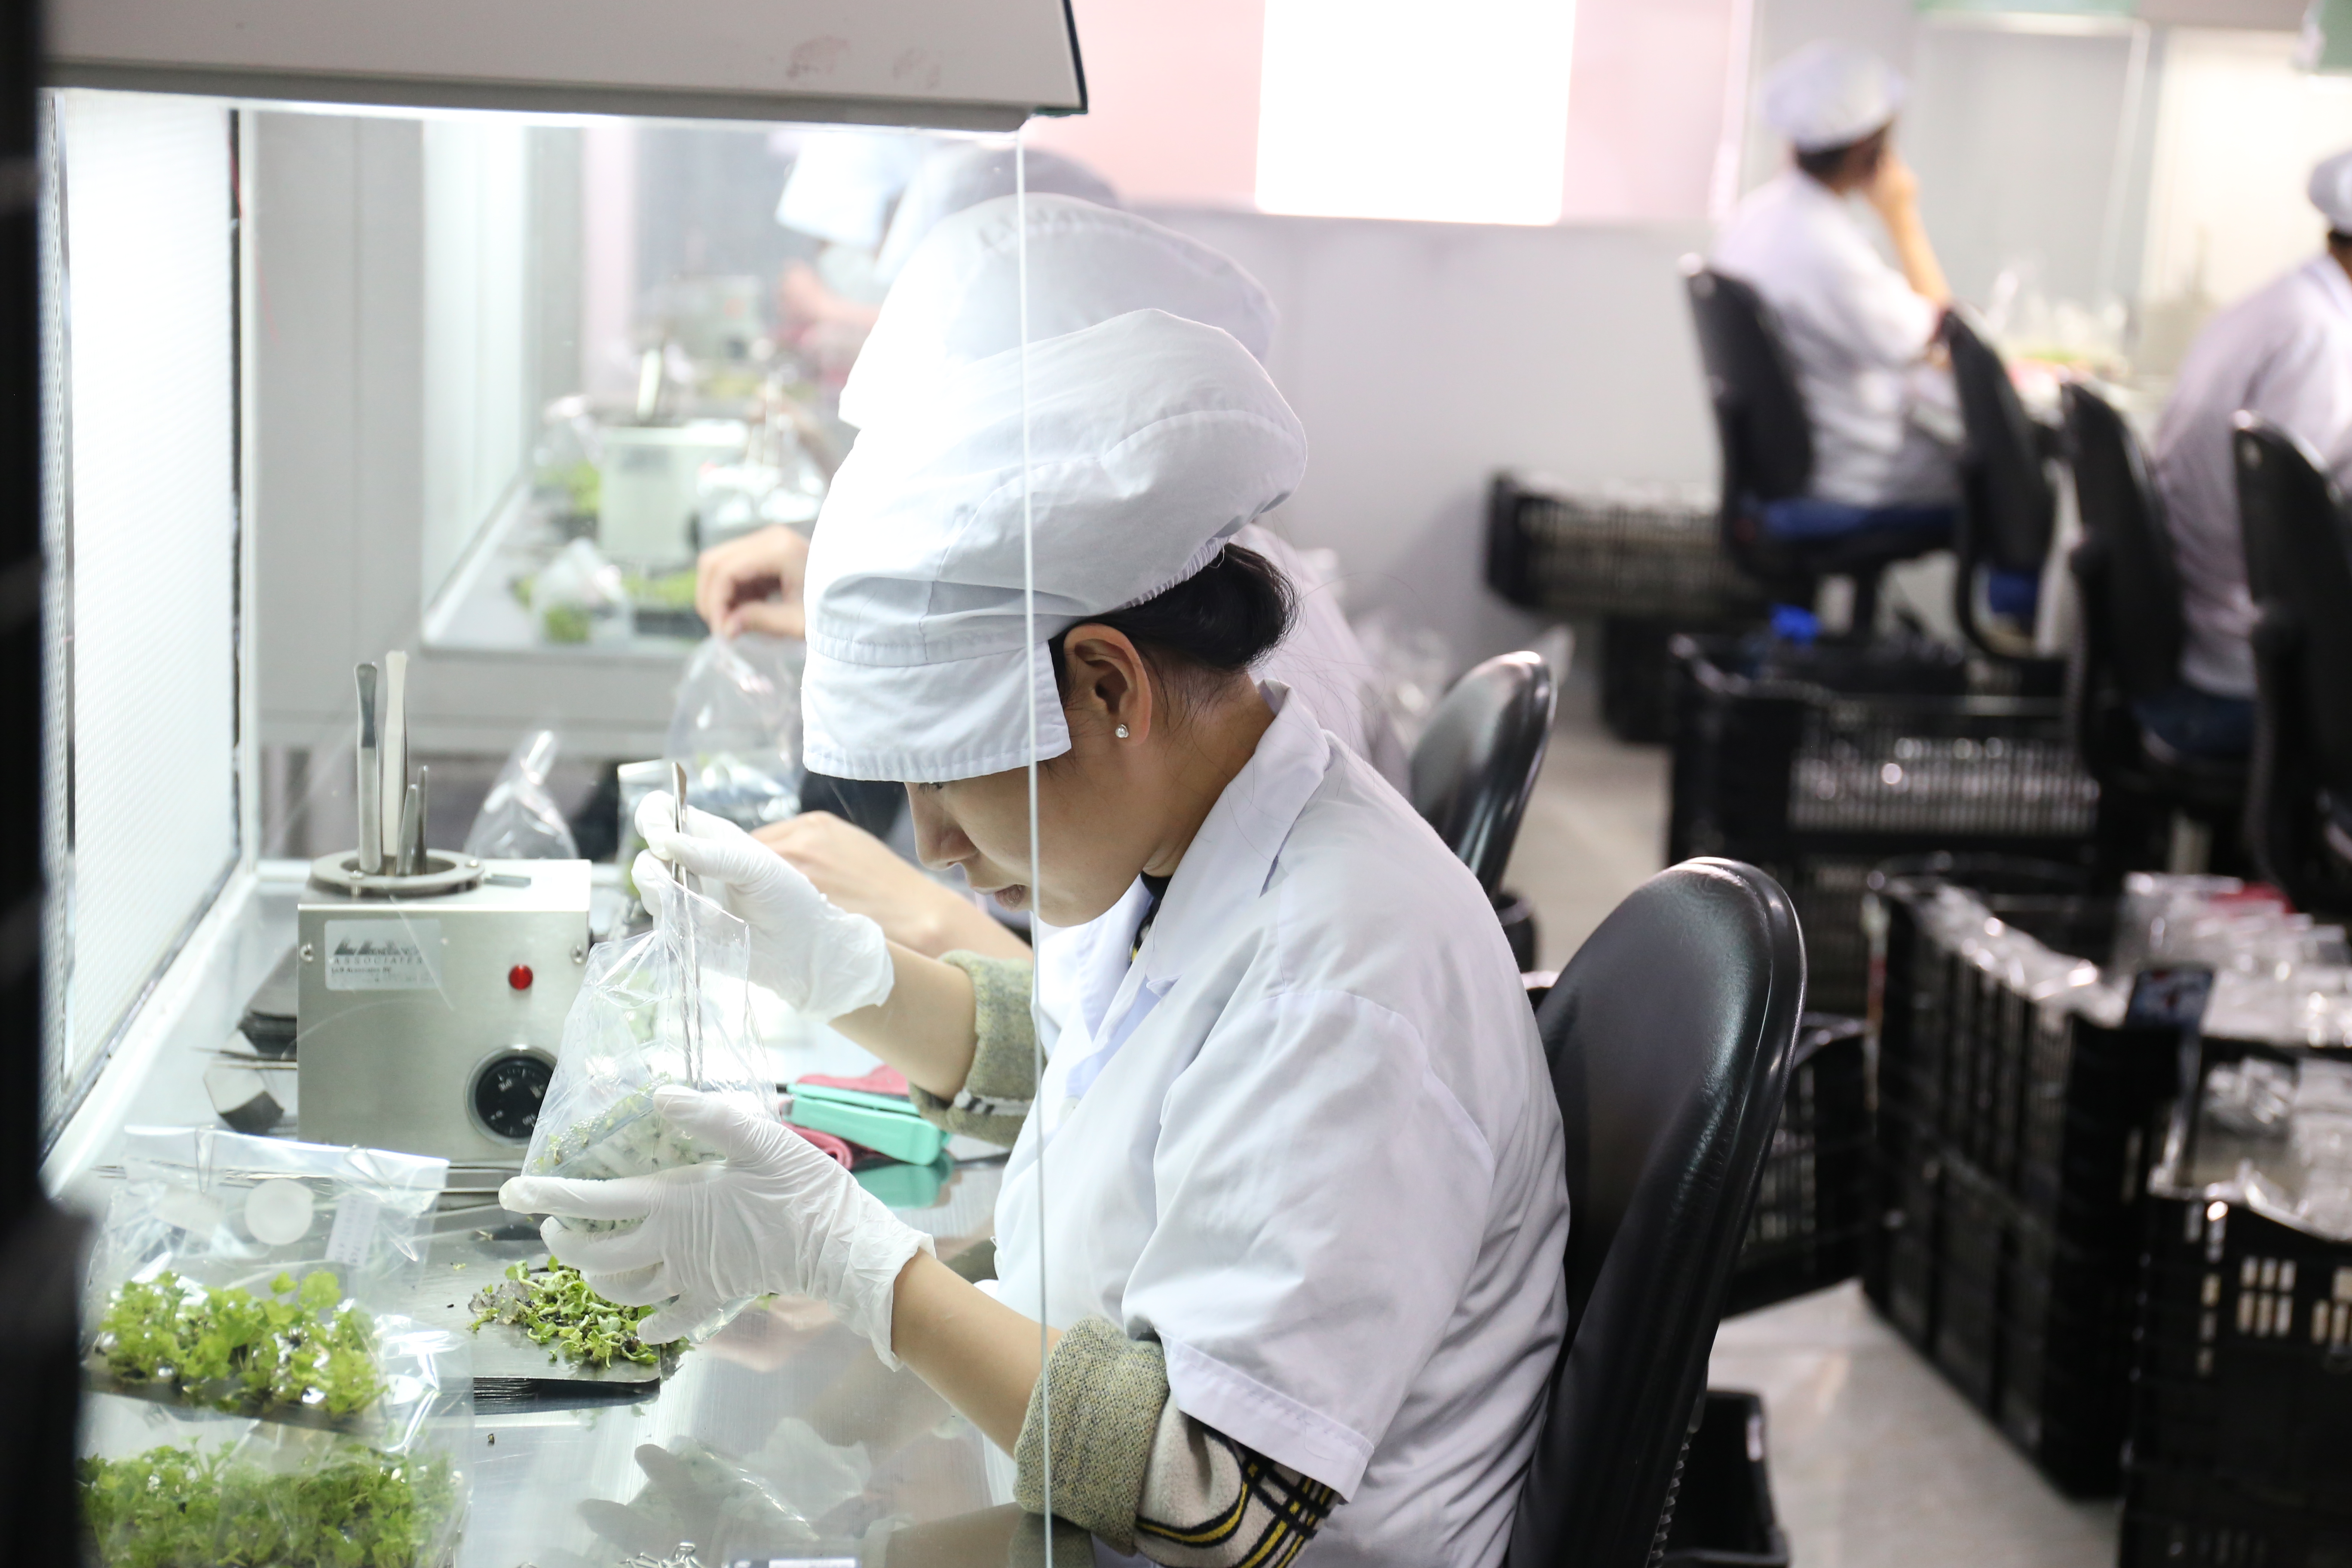 Công ty trách nhiệm hữu hạn công nghệ sinh học F1, một trong năm trung tâm nuôi cấy mô cho hoa salem và đồng tiền lớn nhất ở Đà Lạt. Ảnh: Hảo Linh